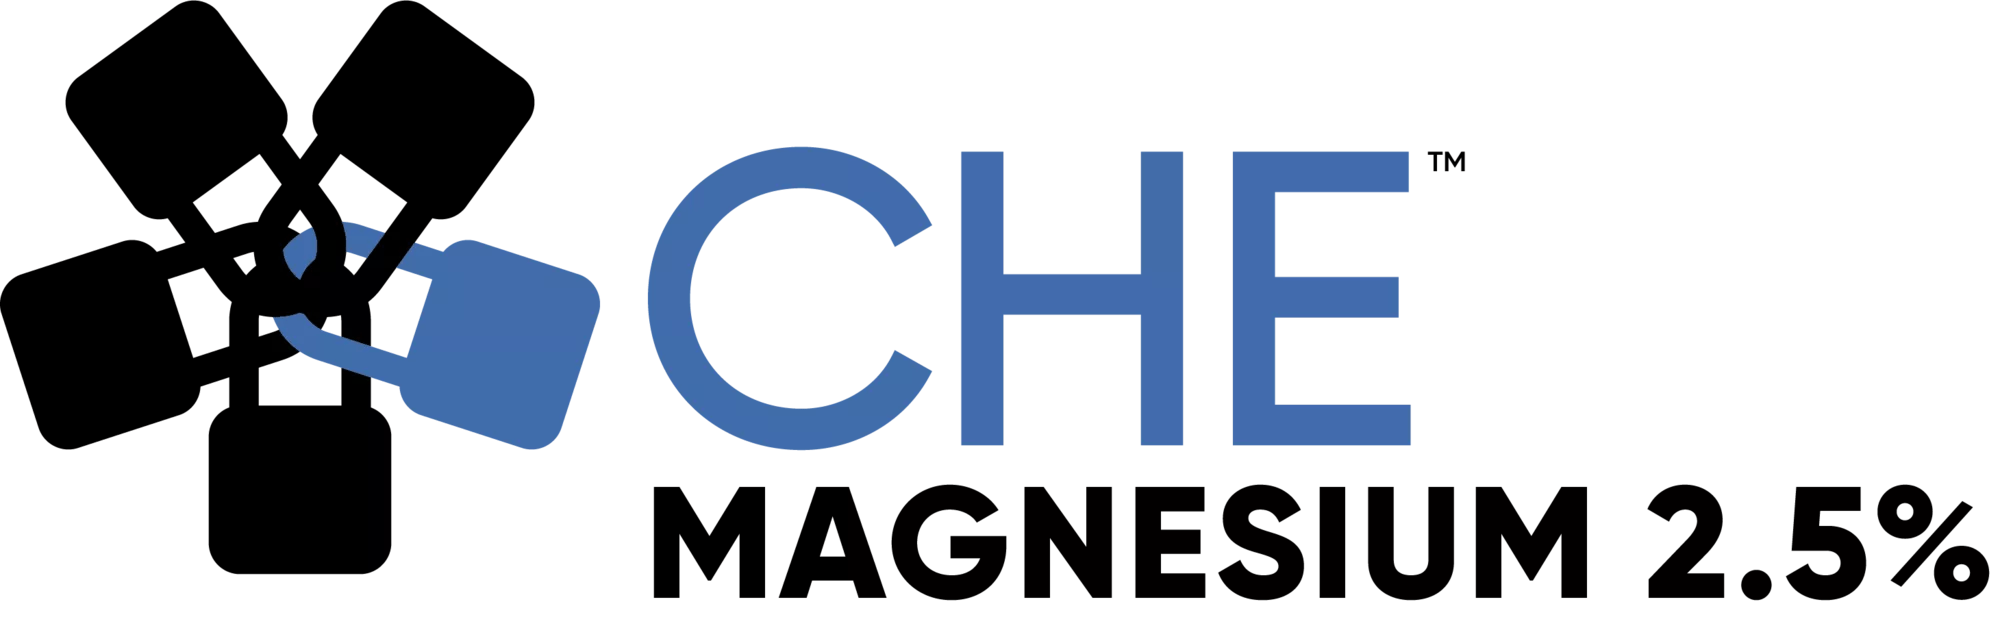 Che - Magnesium 2.5%